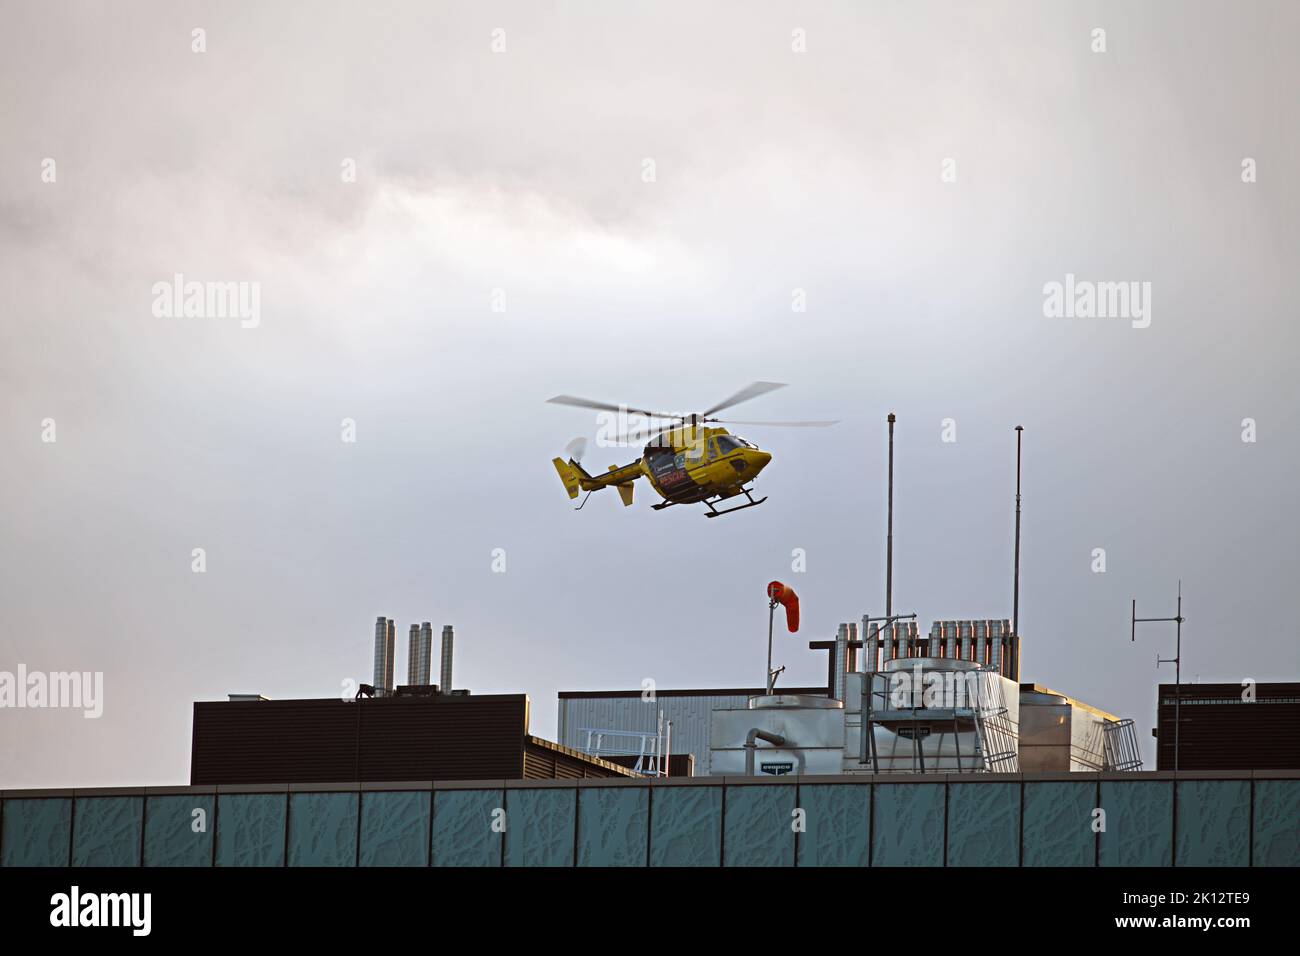 CHRISTCHURCH, NEUSEELAND, 8. SEPTEMBER 2022: Ein Nothubschrauber landet auf dem General Hospital in Christchurch. Körnige Aufnahme bei schlechtem Abendlicht. Stockfoto